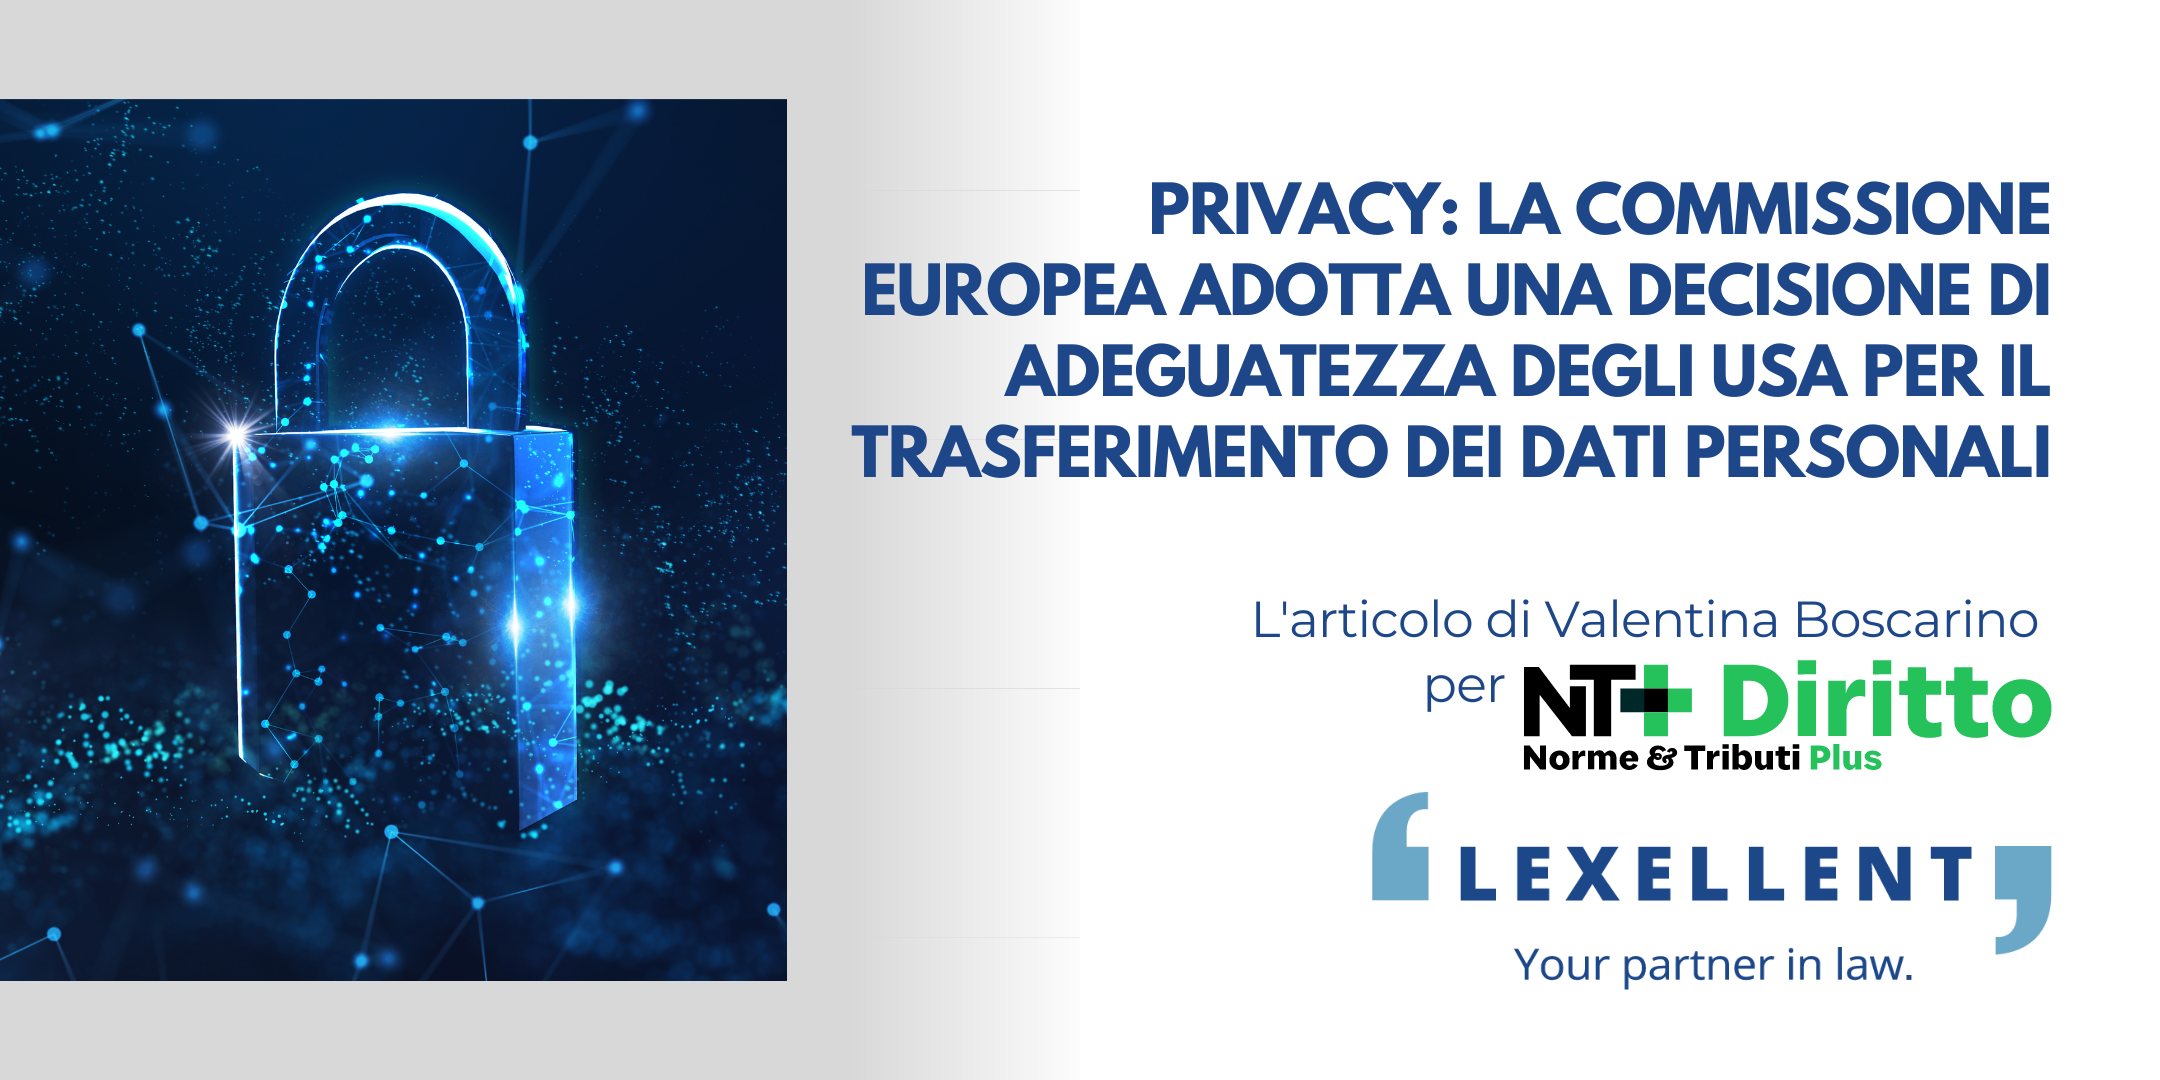 Privacy: la Commissione europea adotta una decisione di adeguatezza degli USA per il trasferimento dei dati personali